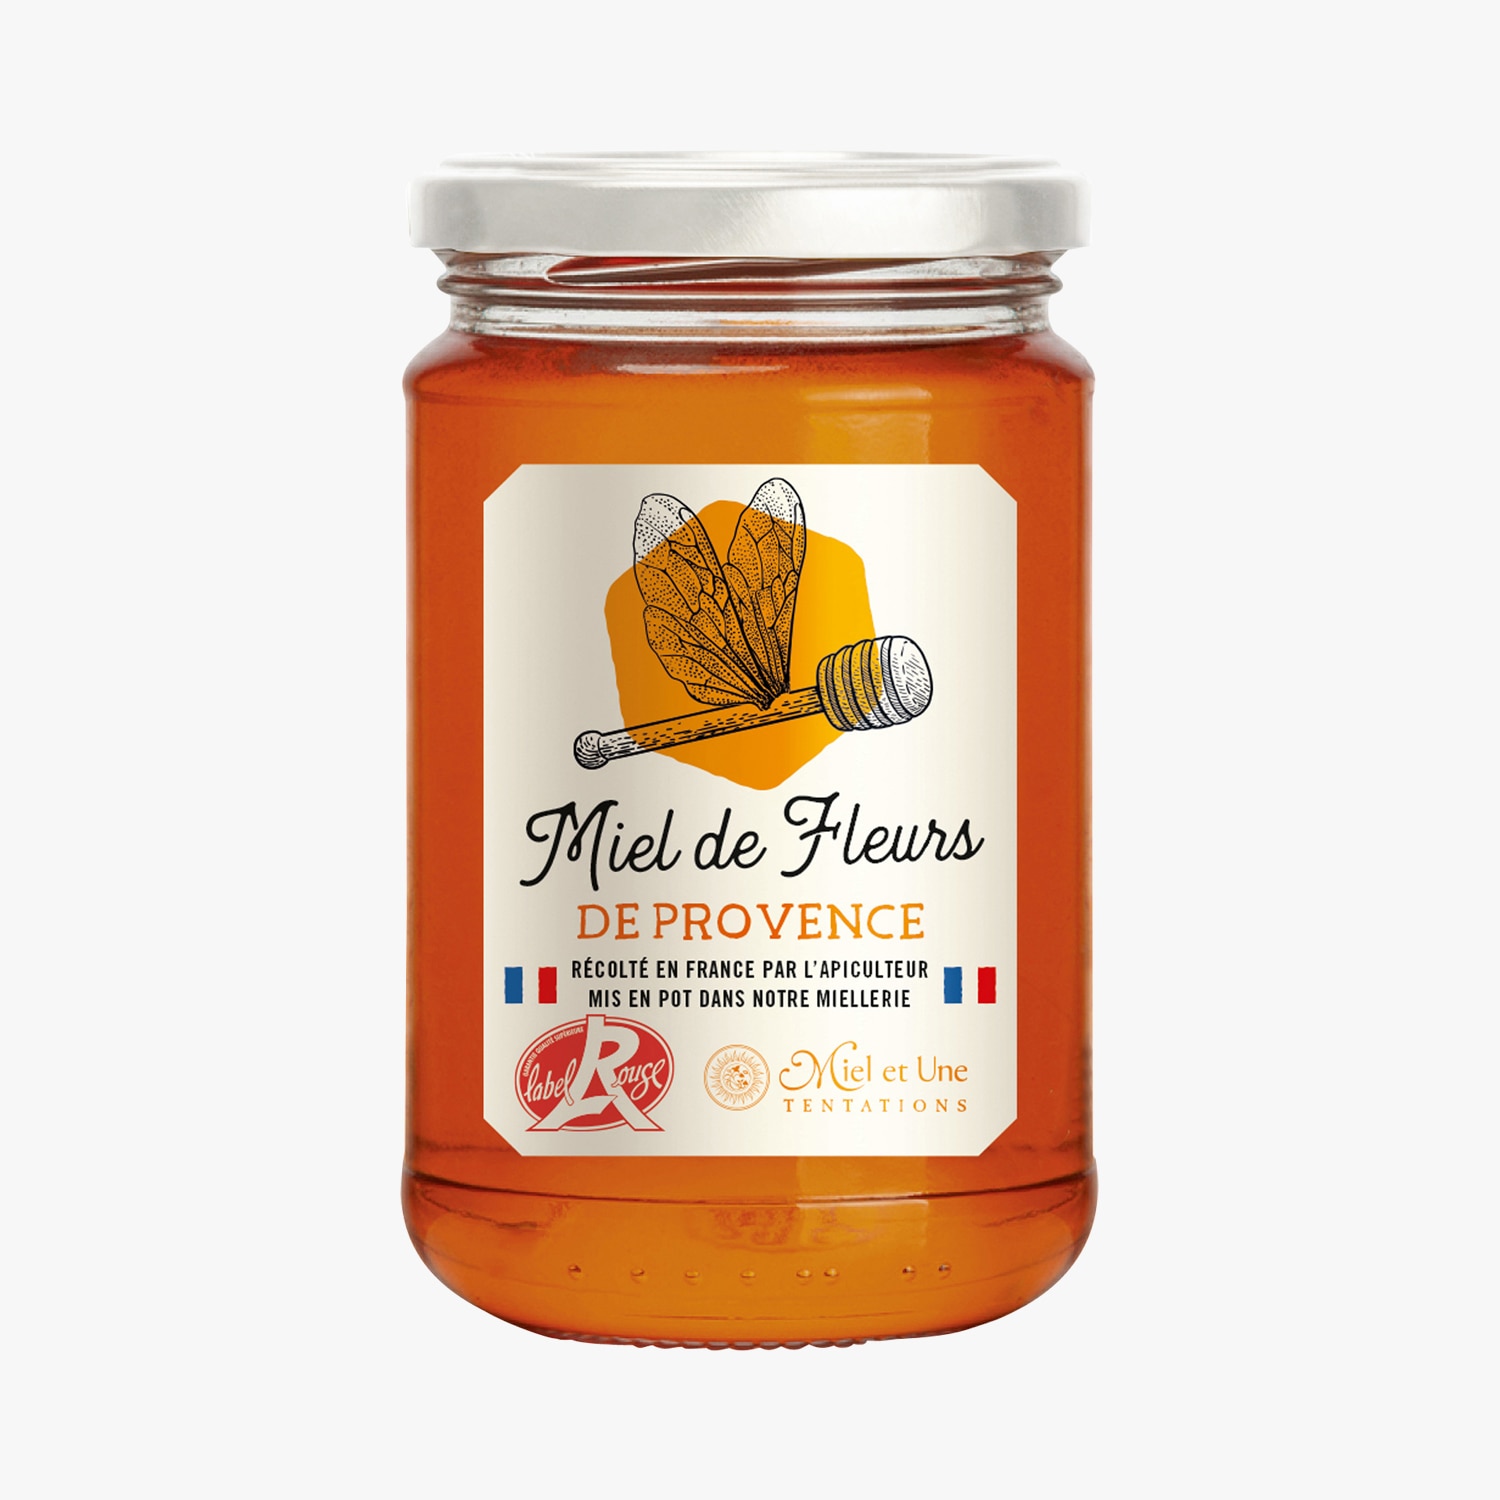 Miel de Fleurs de France